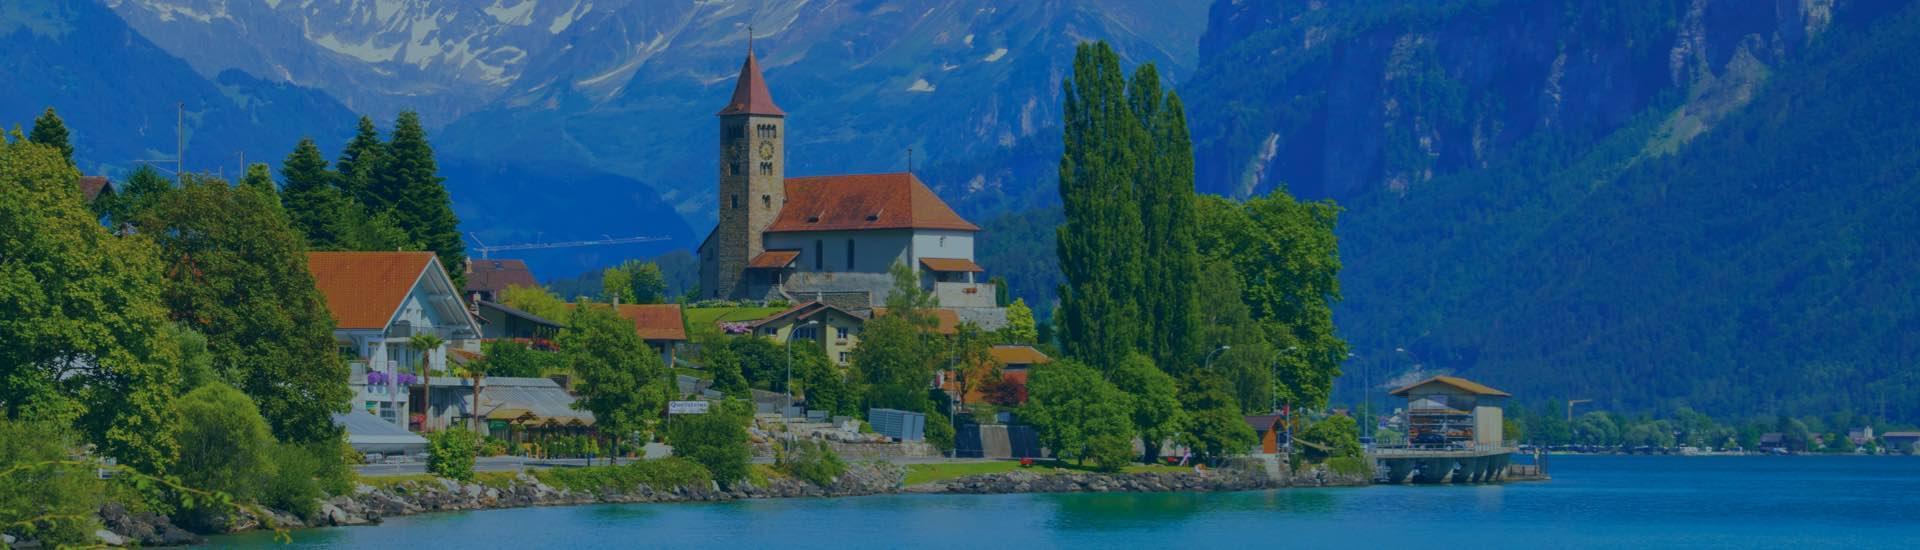 Find the Best Hotels in Interlaken